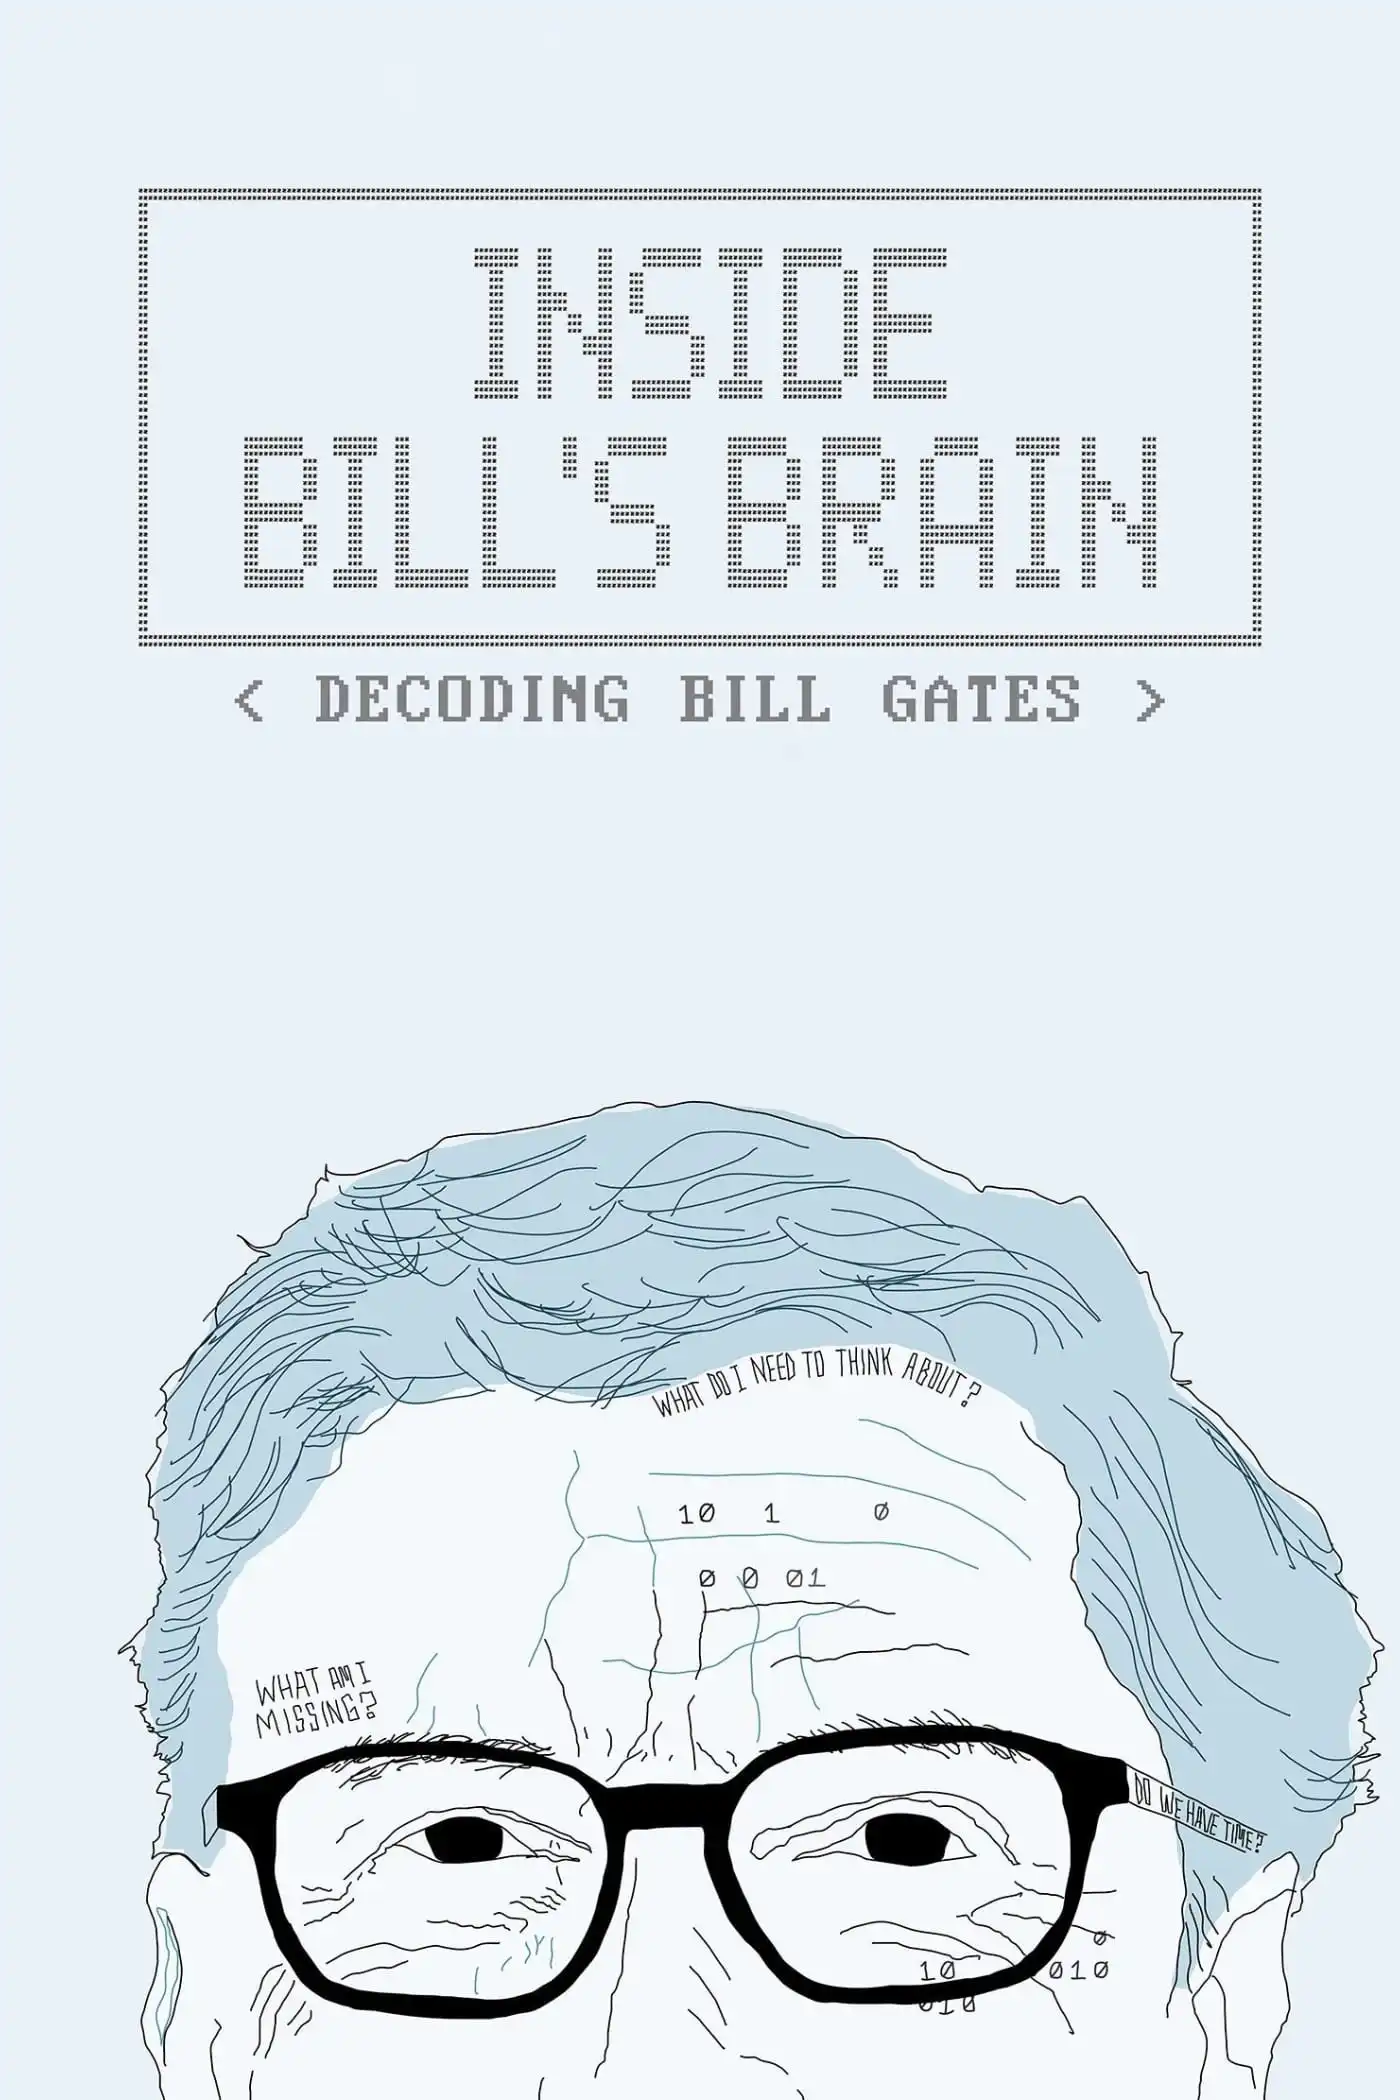 Pelisplus2 Bill Gates bajo la lupa